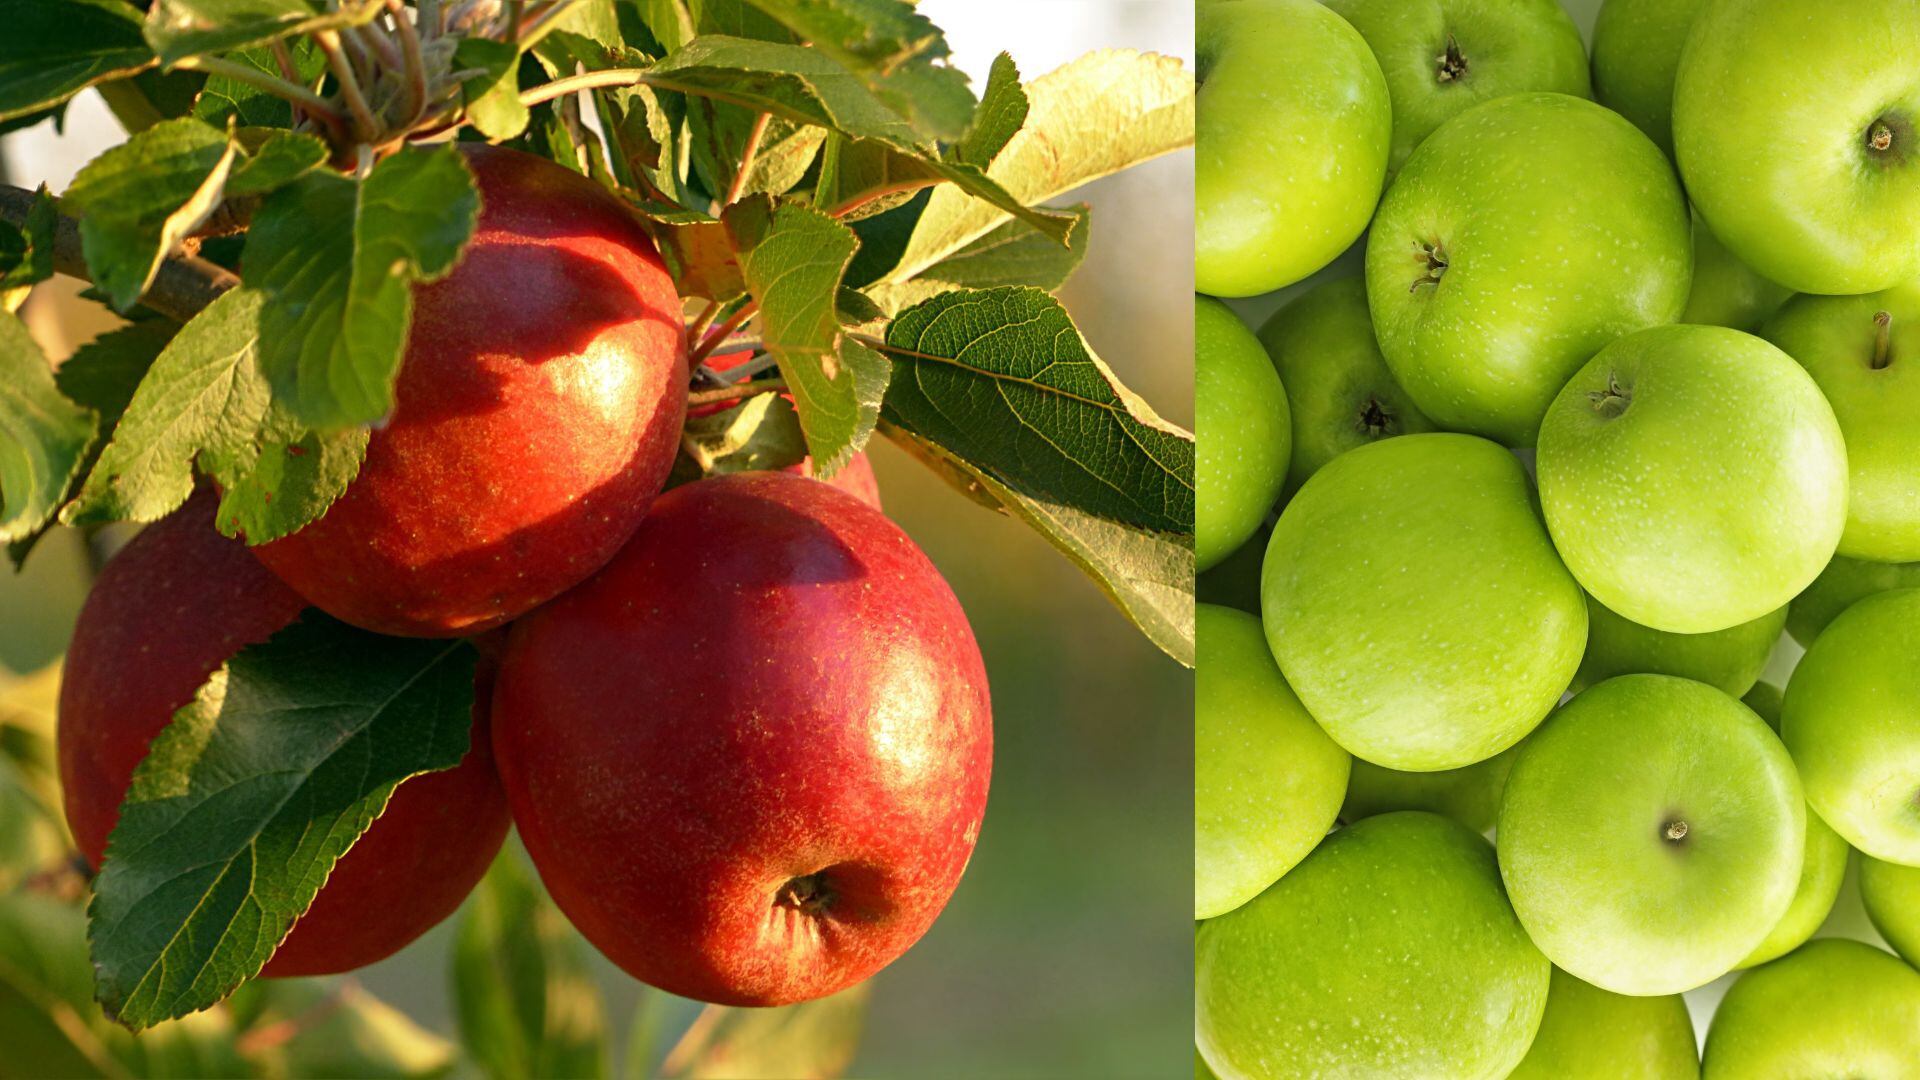 La manzana, una fruta rica en antioxidantes, puede prevenir infartos, reducir el colesterol y mejorar la salud cardiovascular según estudios de Harvard.